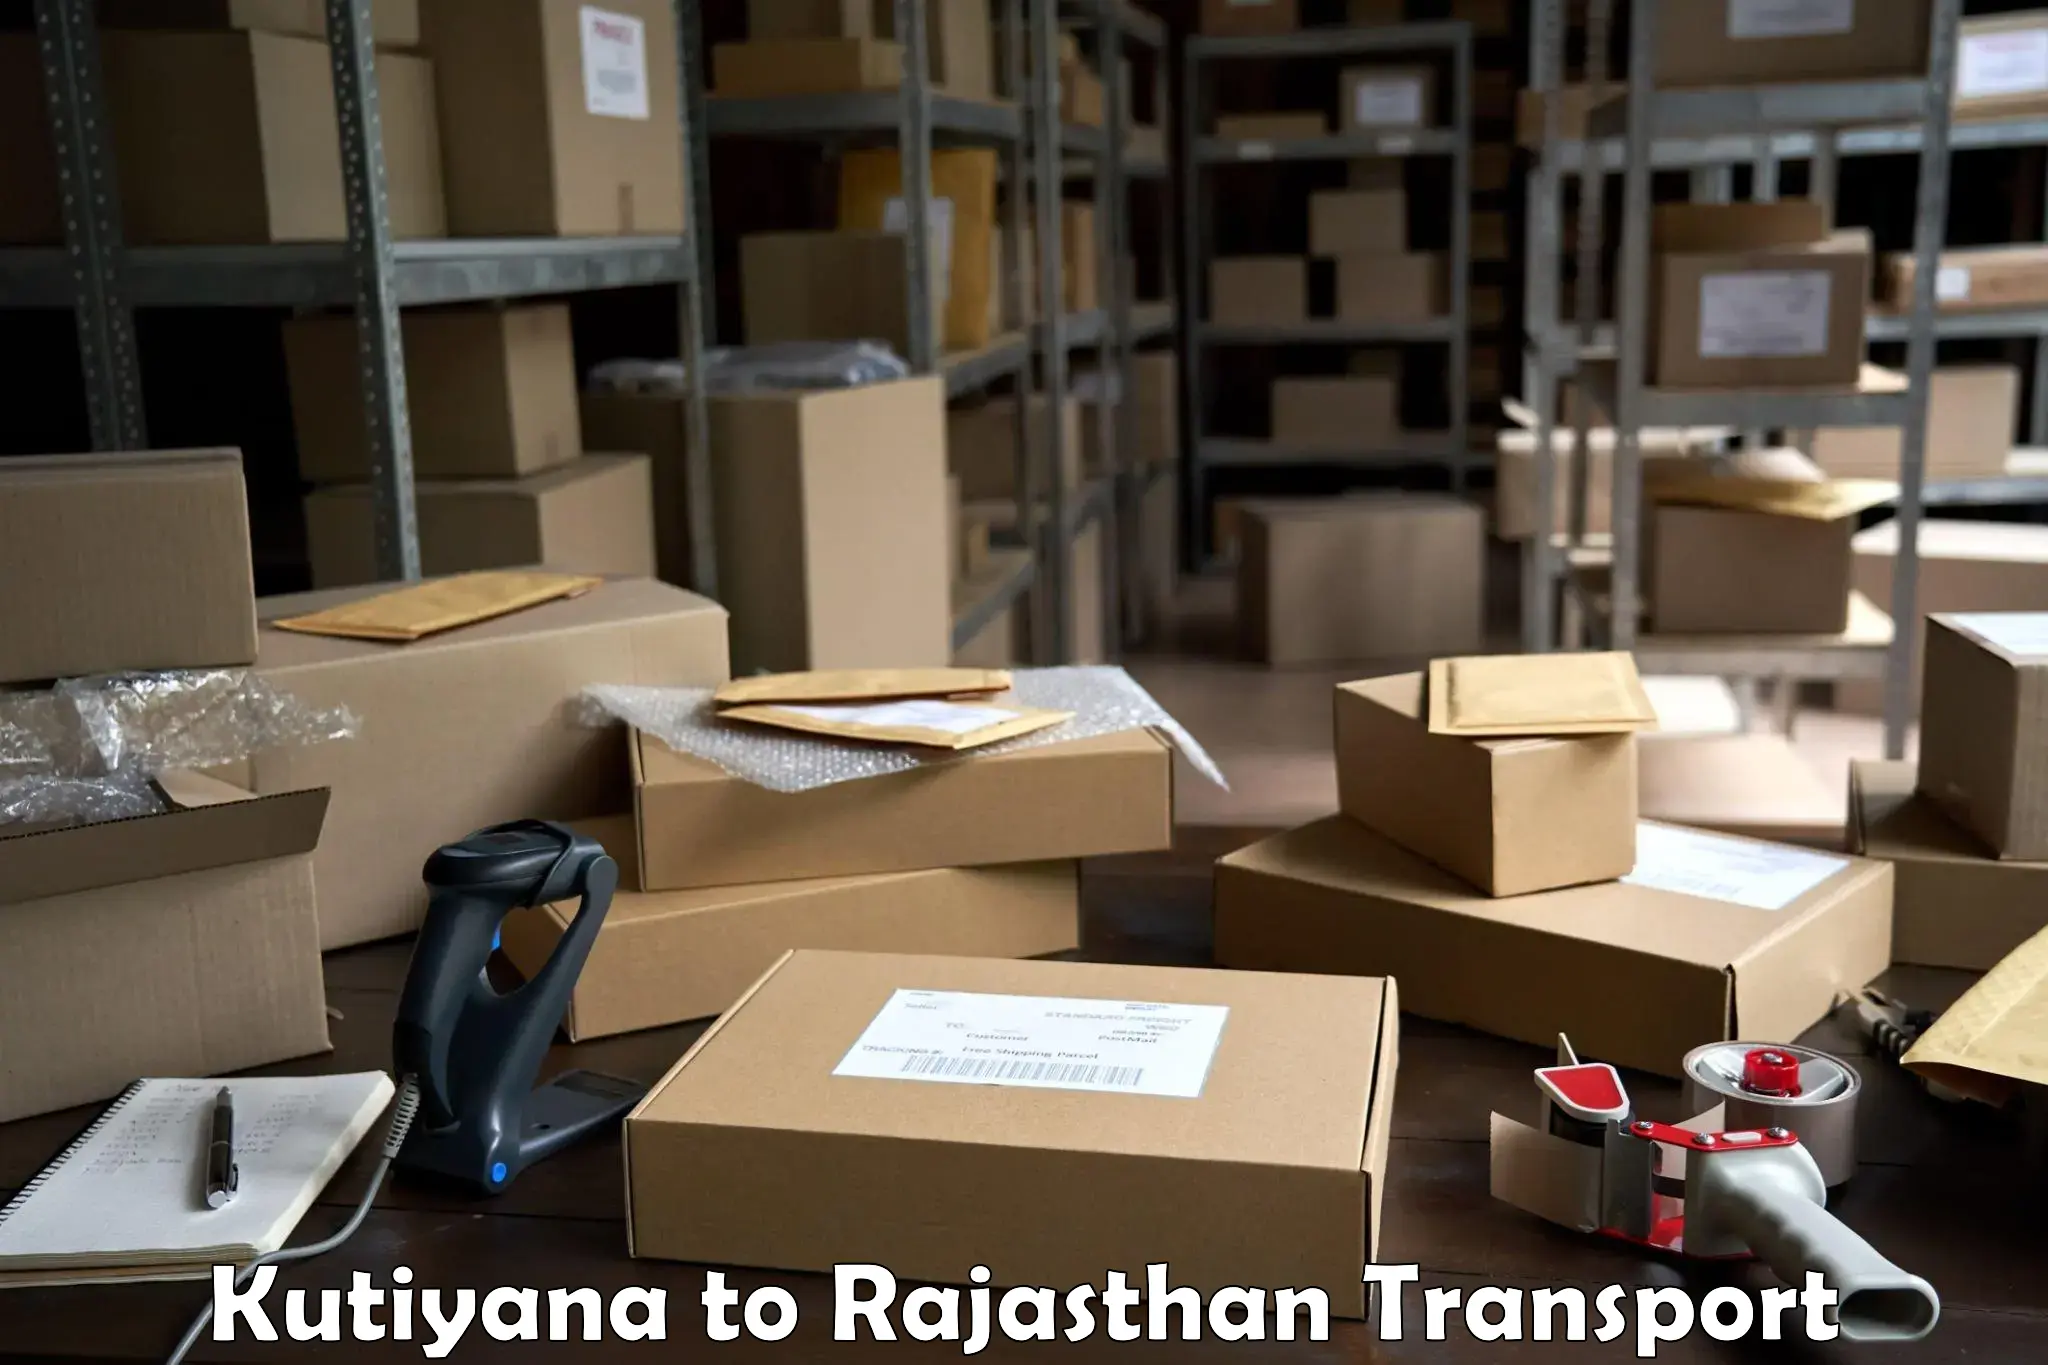 Furniture transport service Kutiyana to Merta